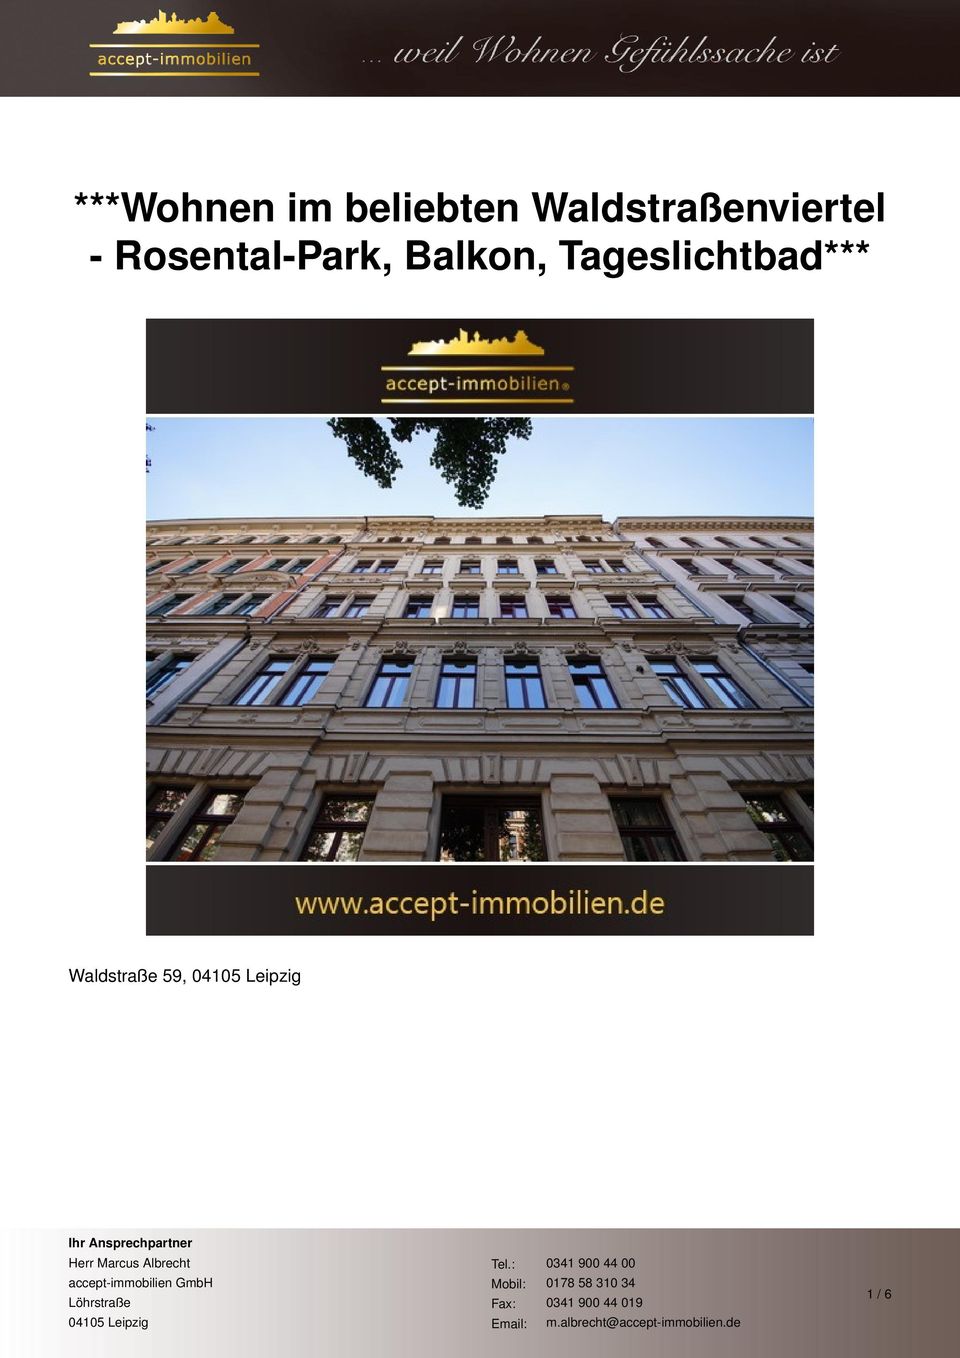 Rosental-Park, Balkon,